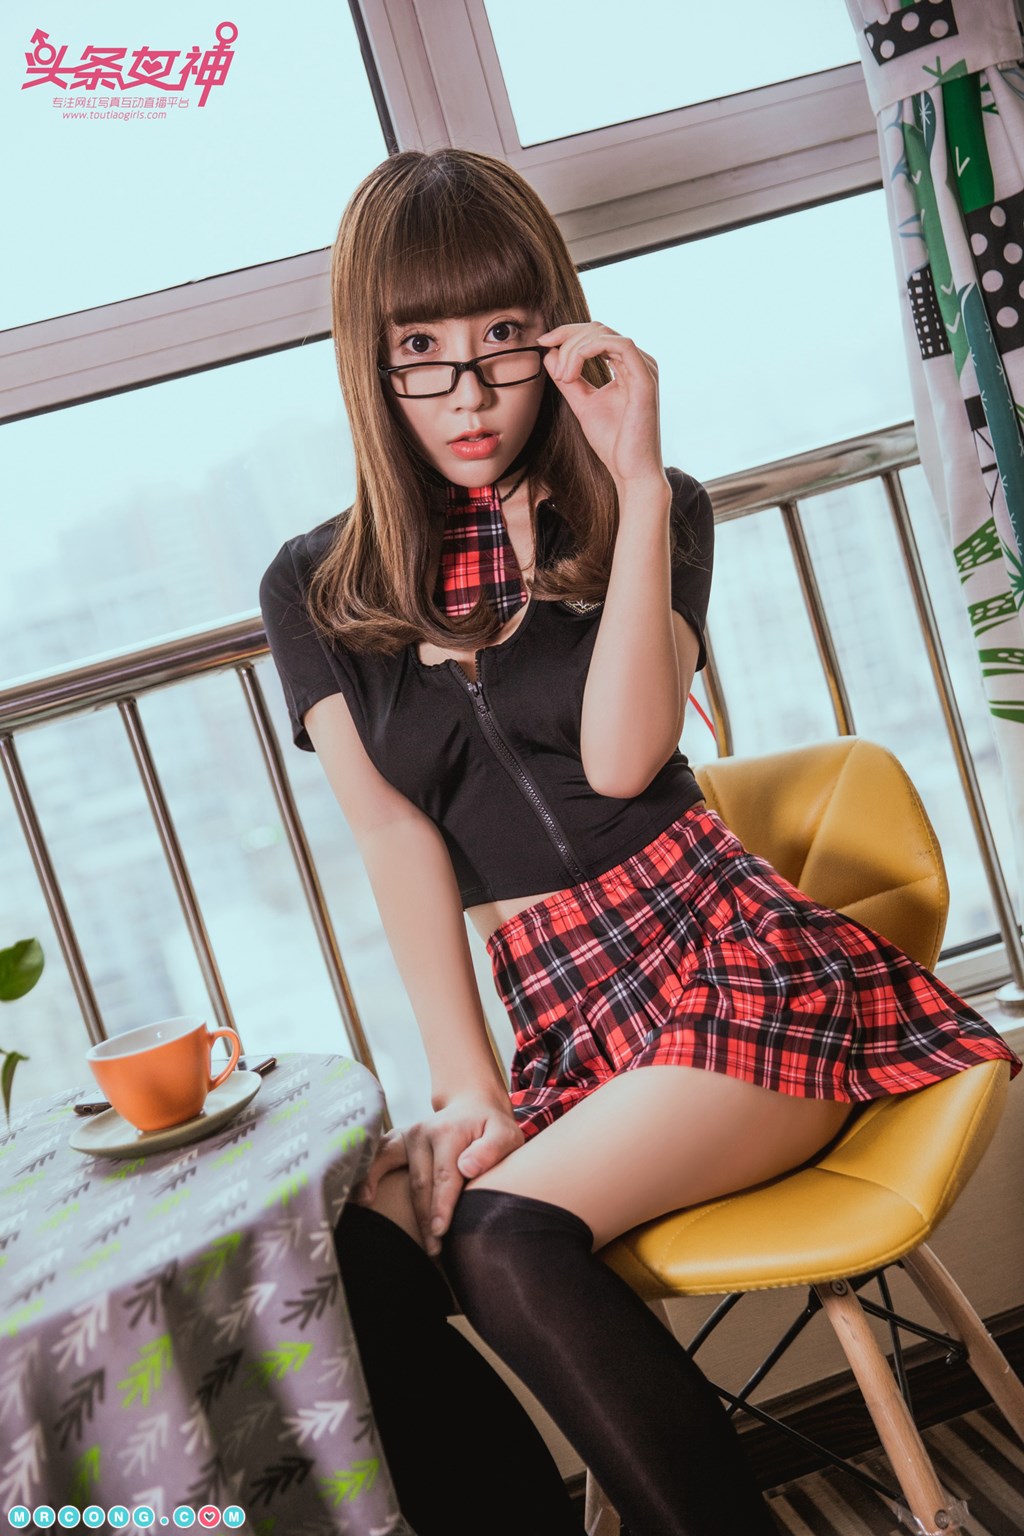 TouTiao 2018-06-13: Model Xiao Xiao (笑笑) (20 photos) photo 1-1